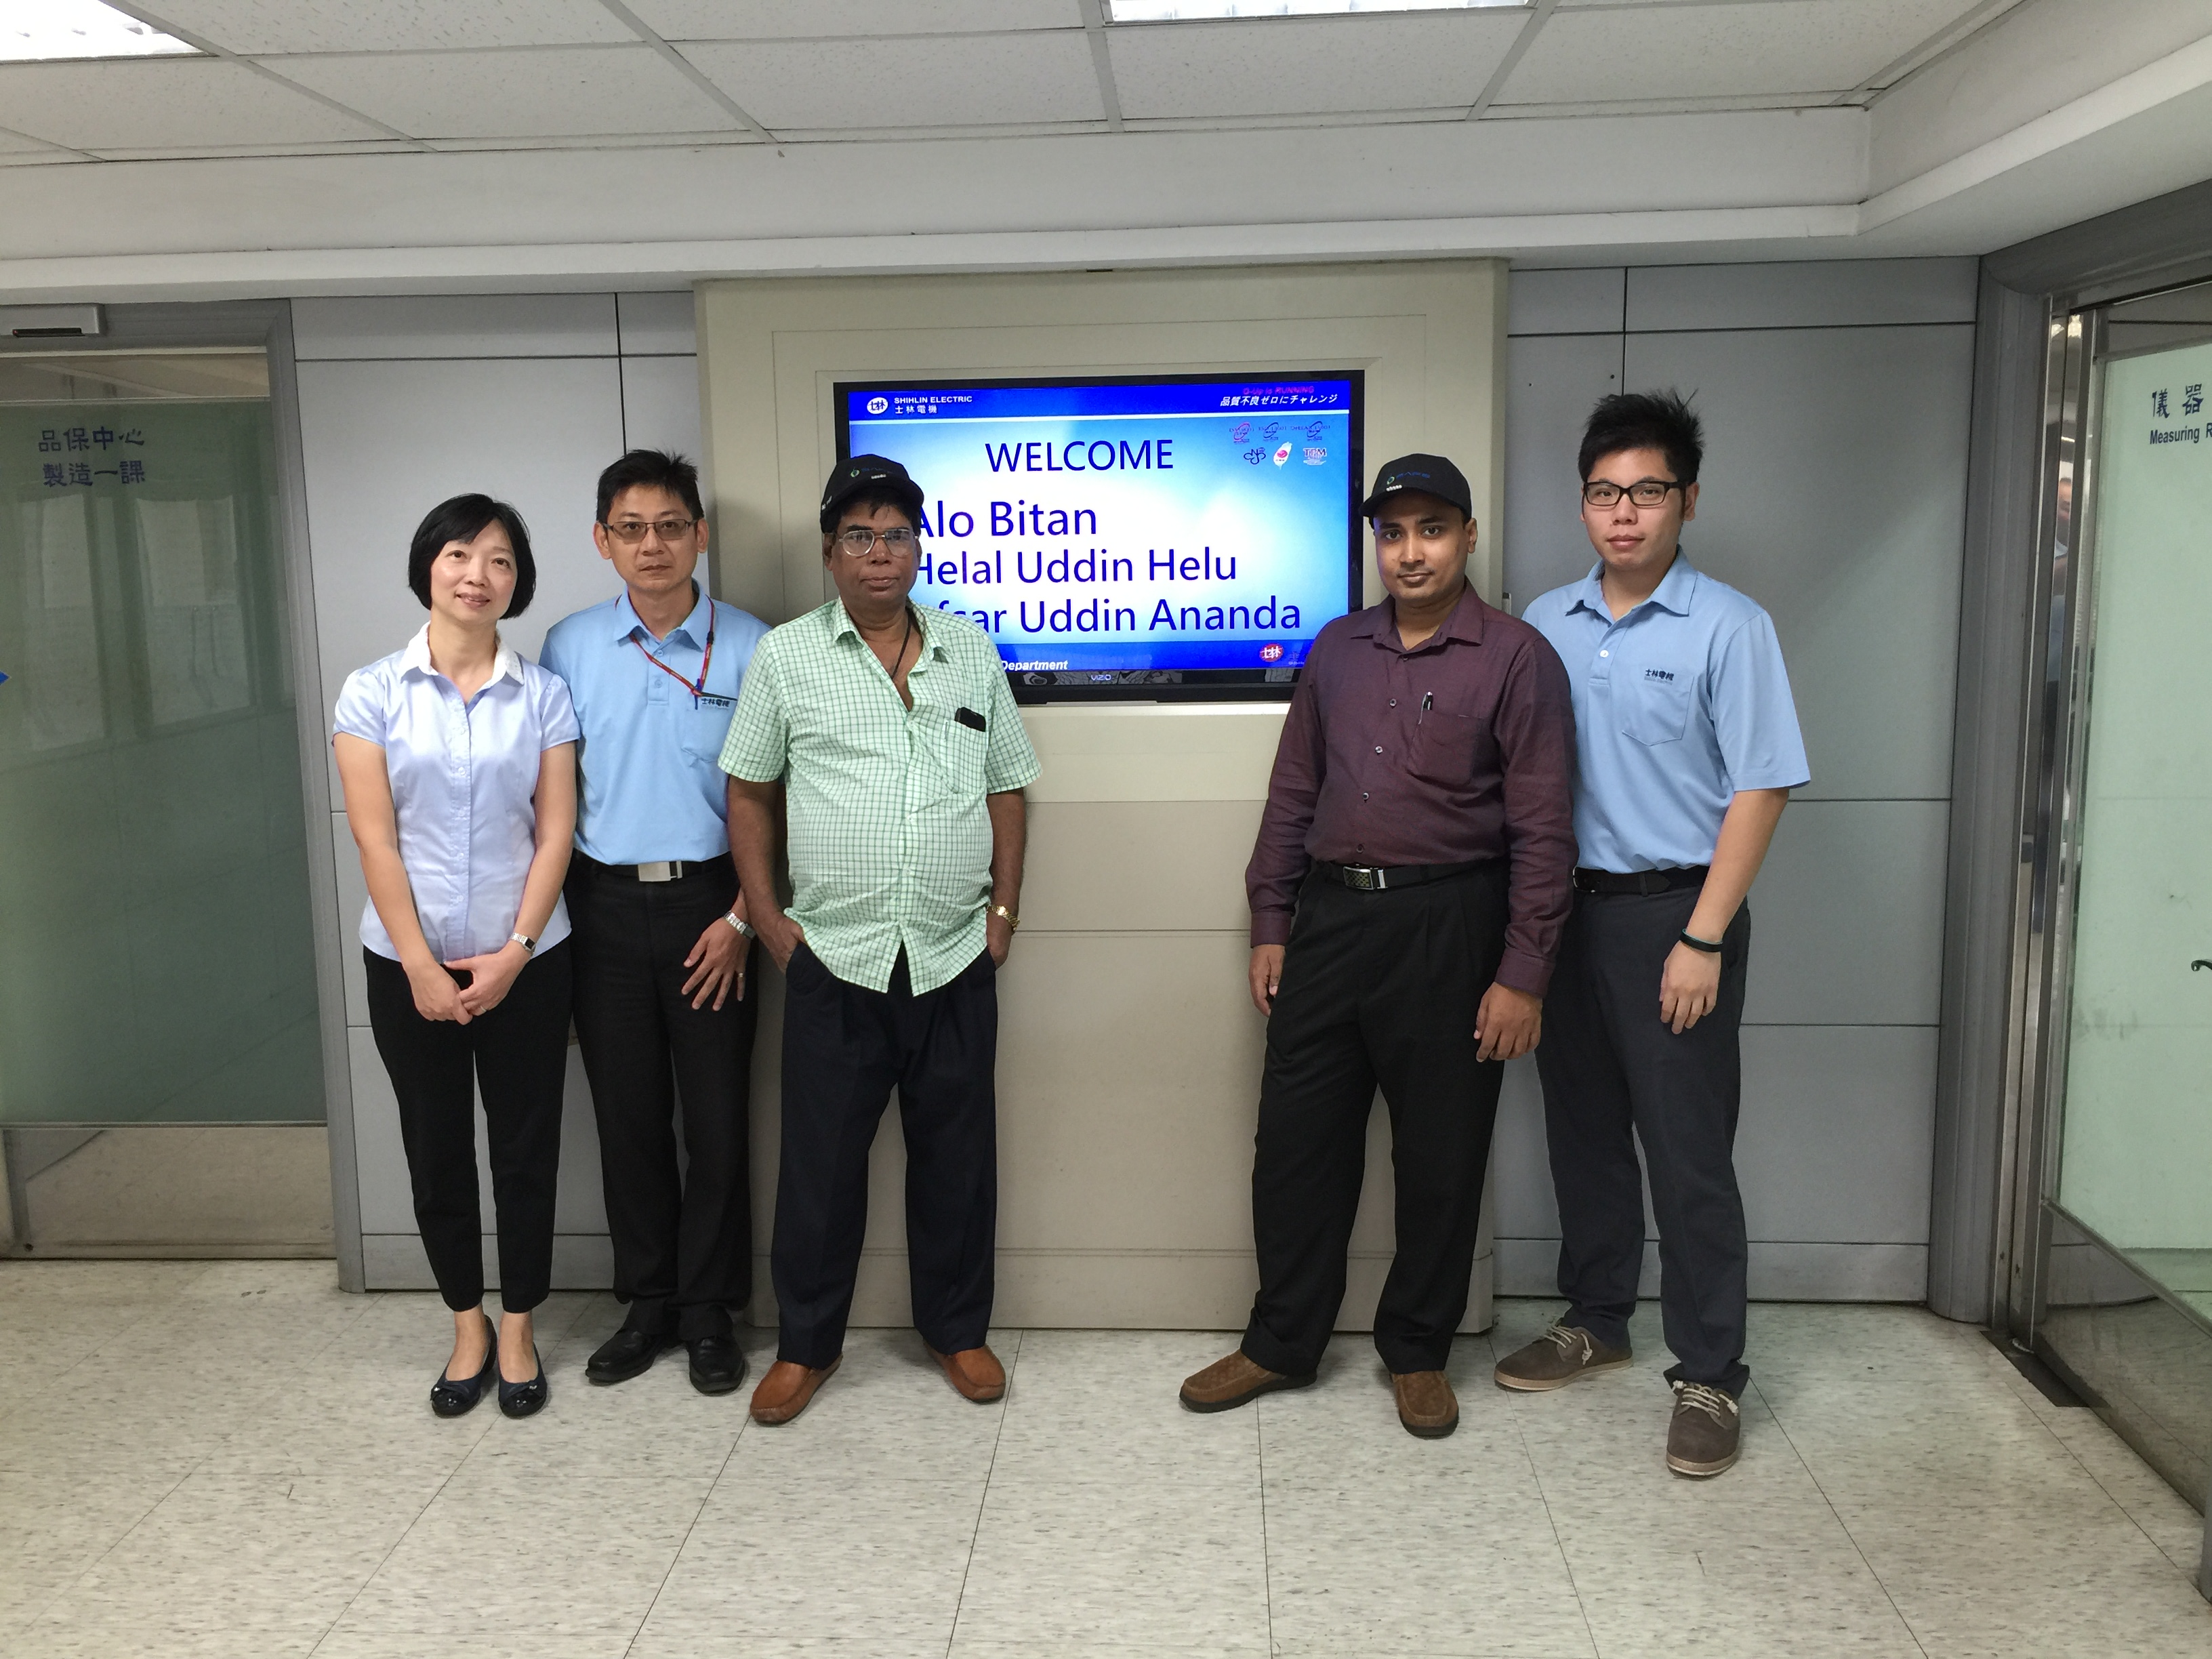 Посещение бангладешских клиентов компанией Shihlin Electric